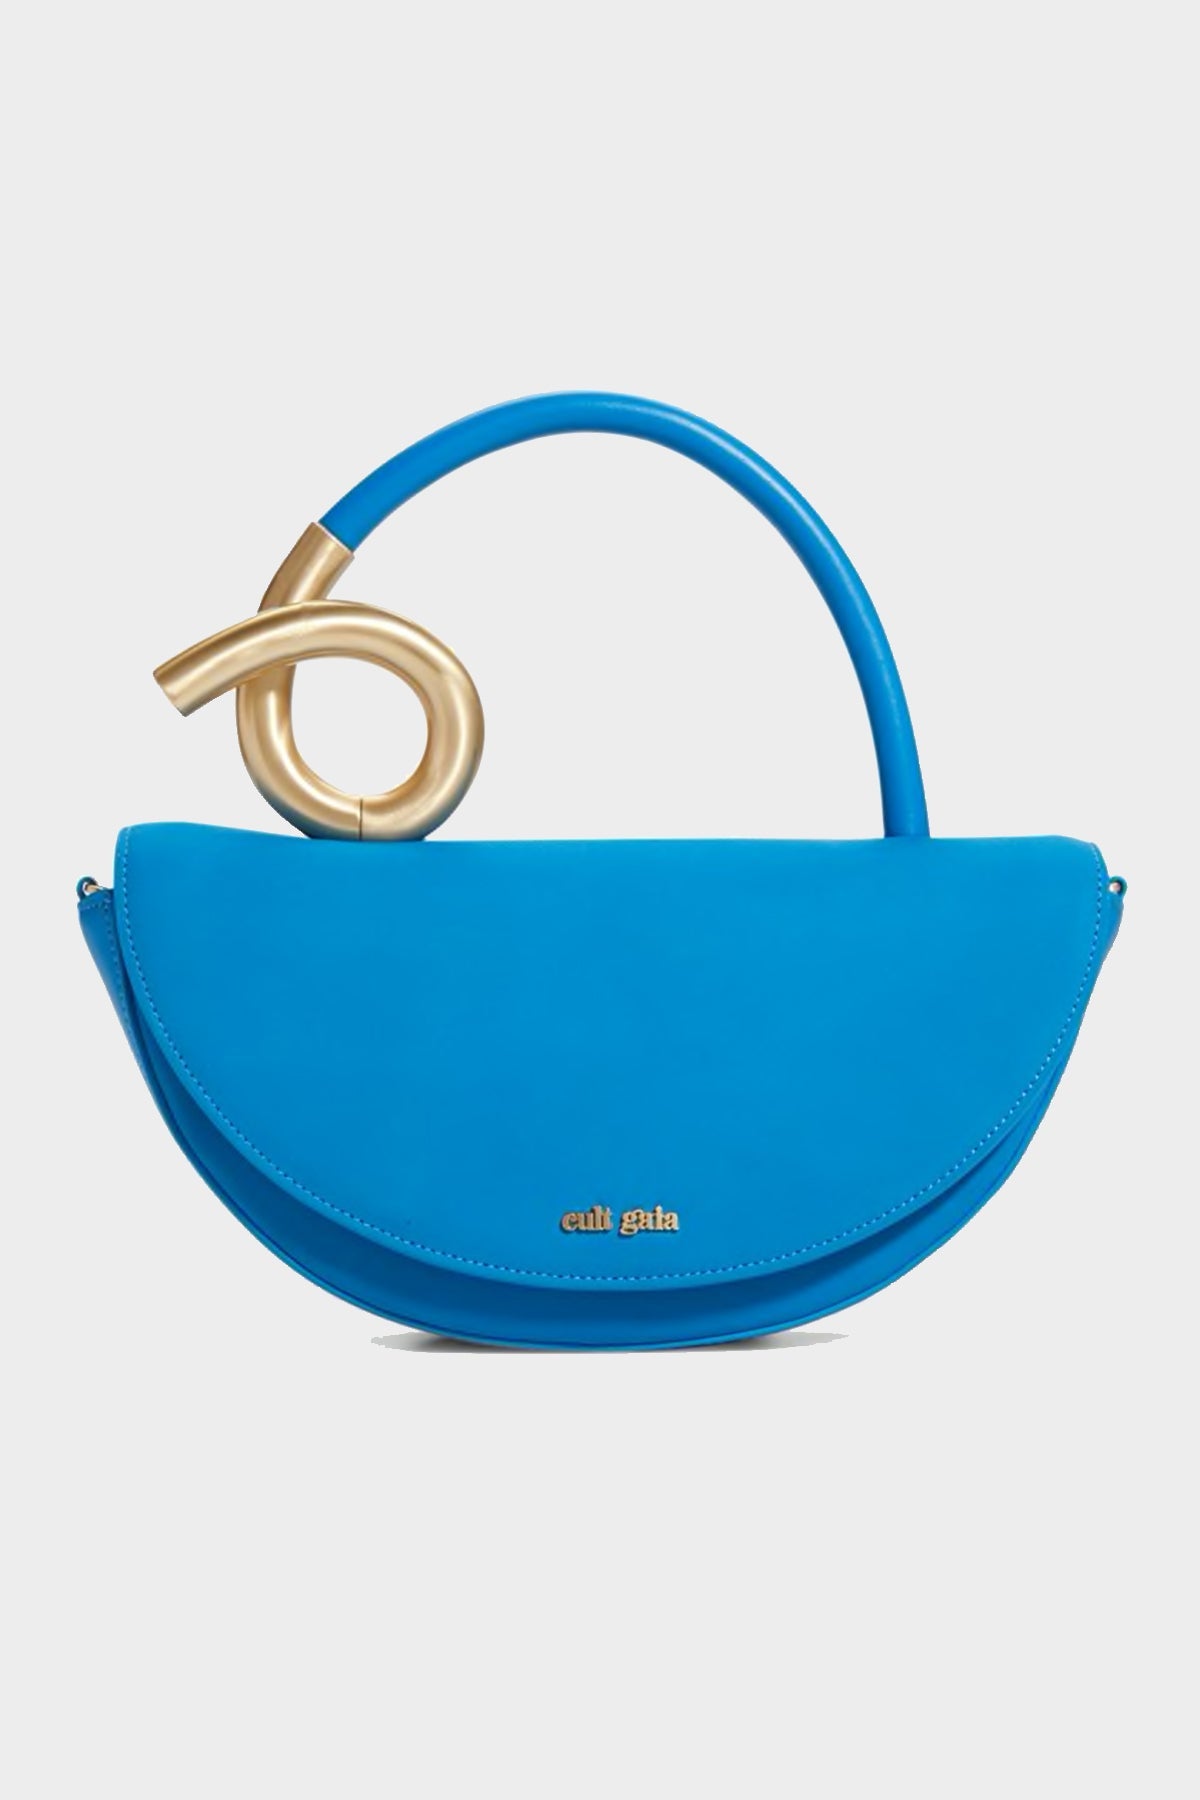 Azariah Top Handle Bag in Electric Blue - shop-olivia.com